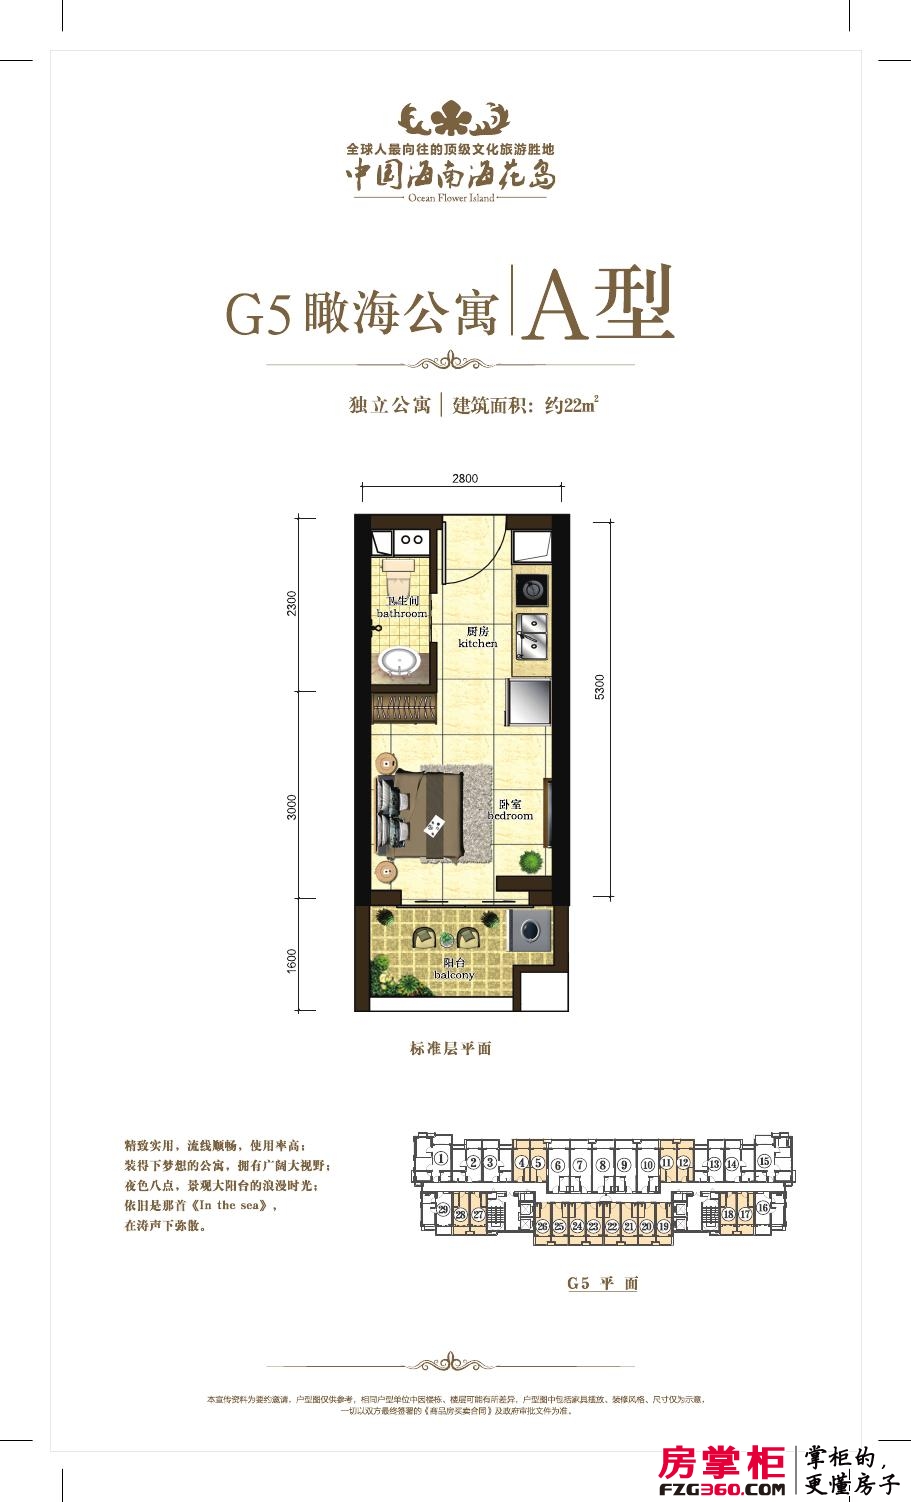 瞰海公寓G5A型